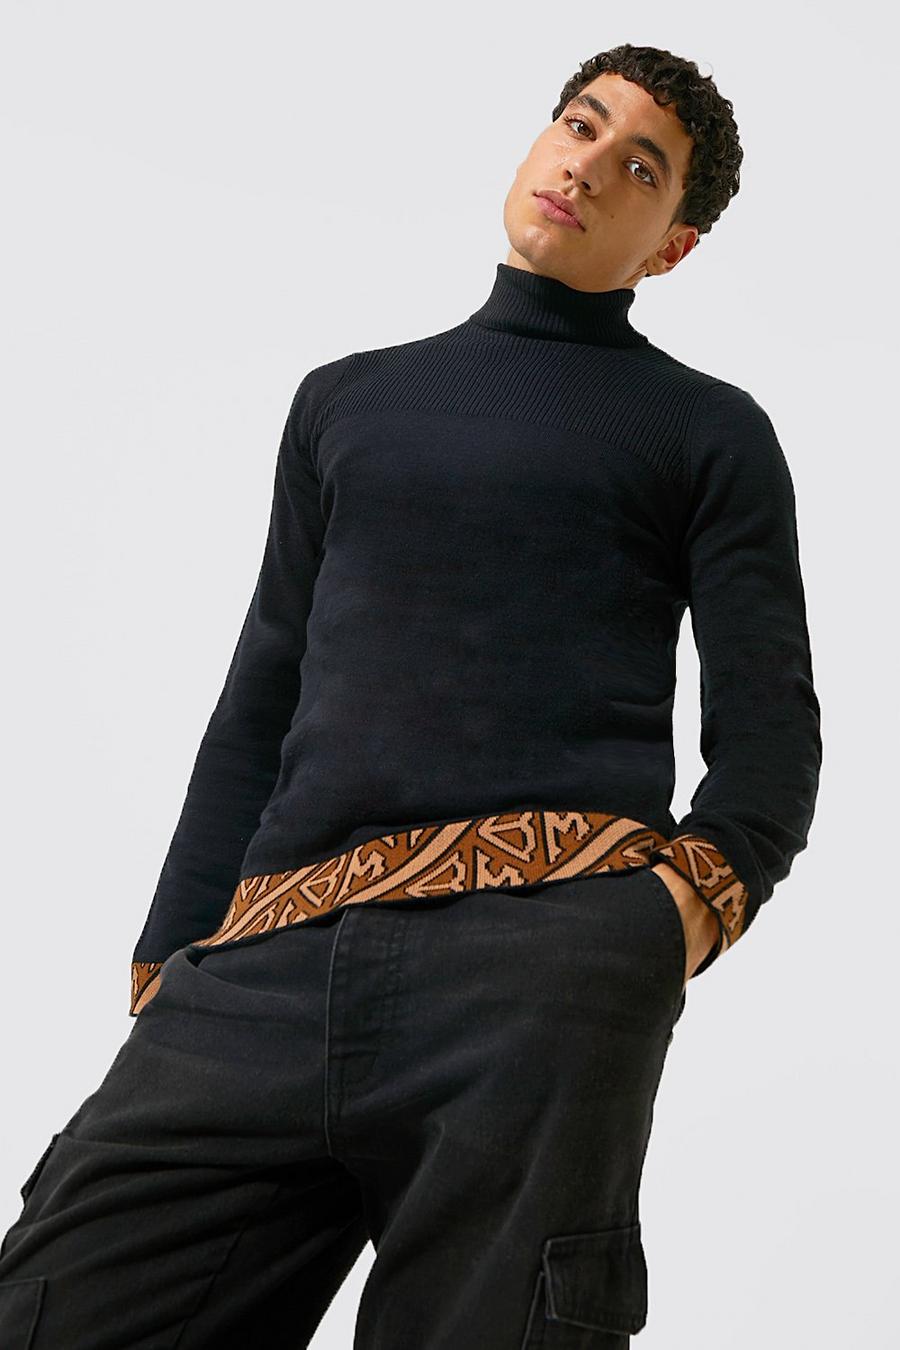 שחור nero סוודר בגזרה צמודה עם צווארון נגלל ותפרים בצבעים מנוגדים